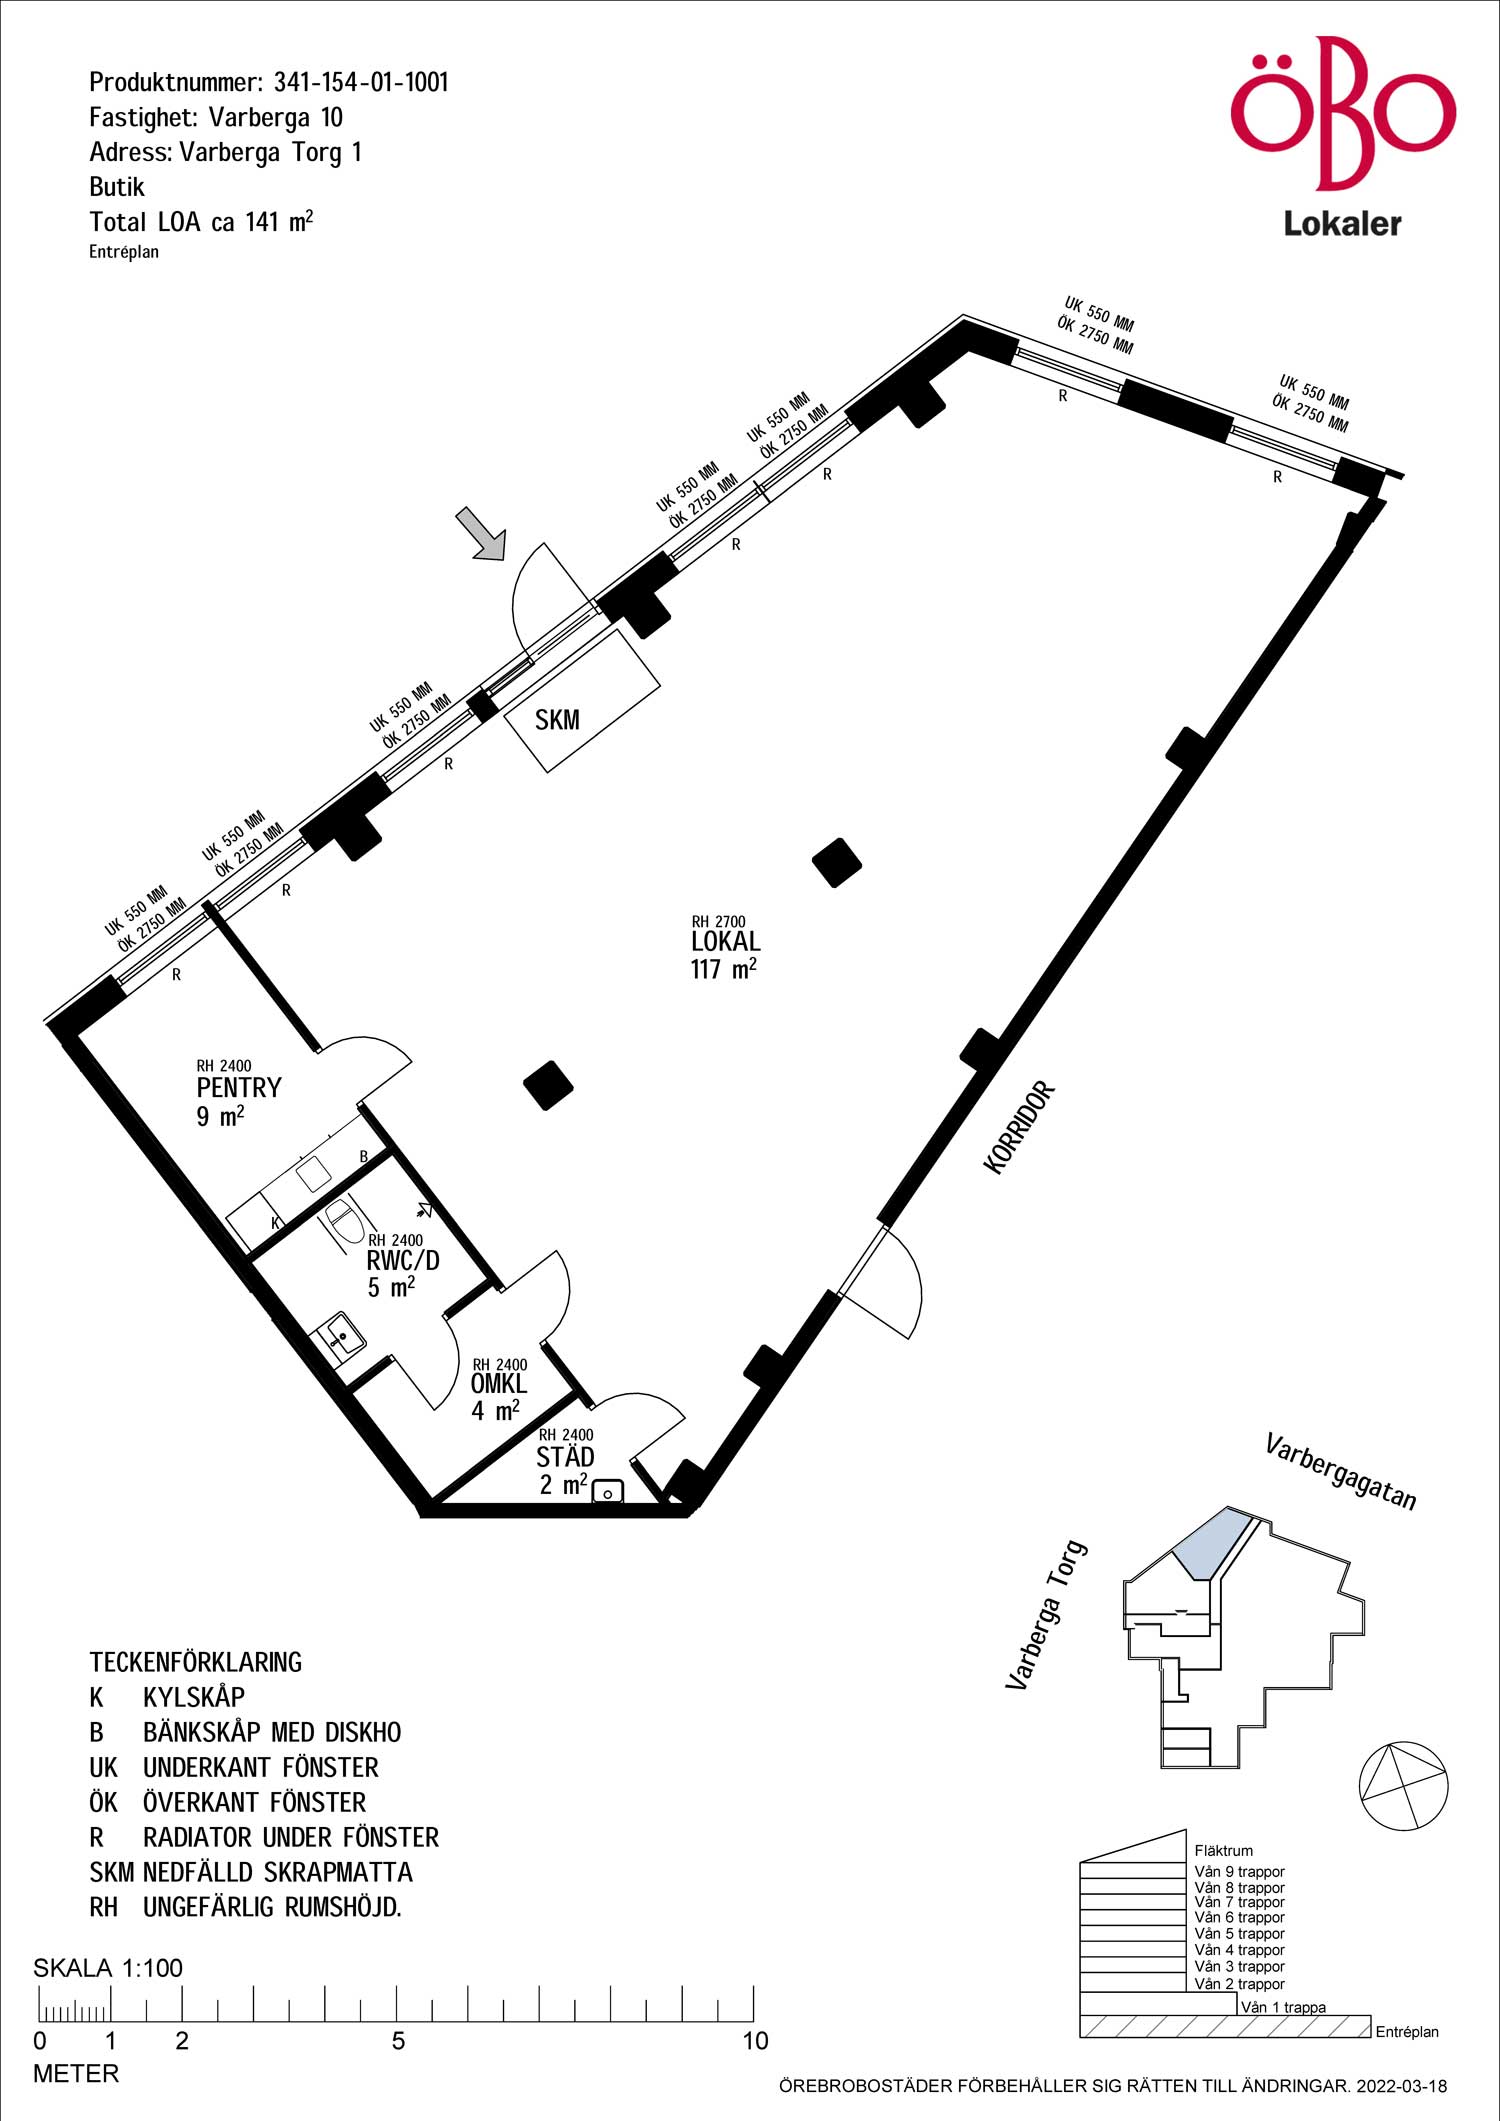 Planlösning över lokal i Varberga centrum bestående av stor öppen yta, pentry, omklädningsrum, RWC och städutrymme.